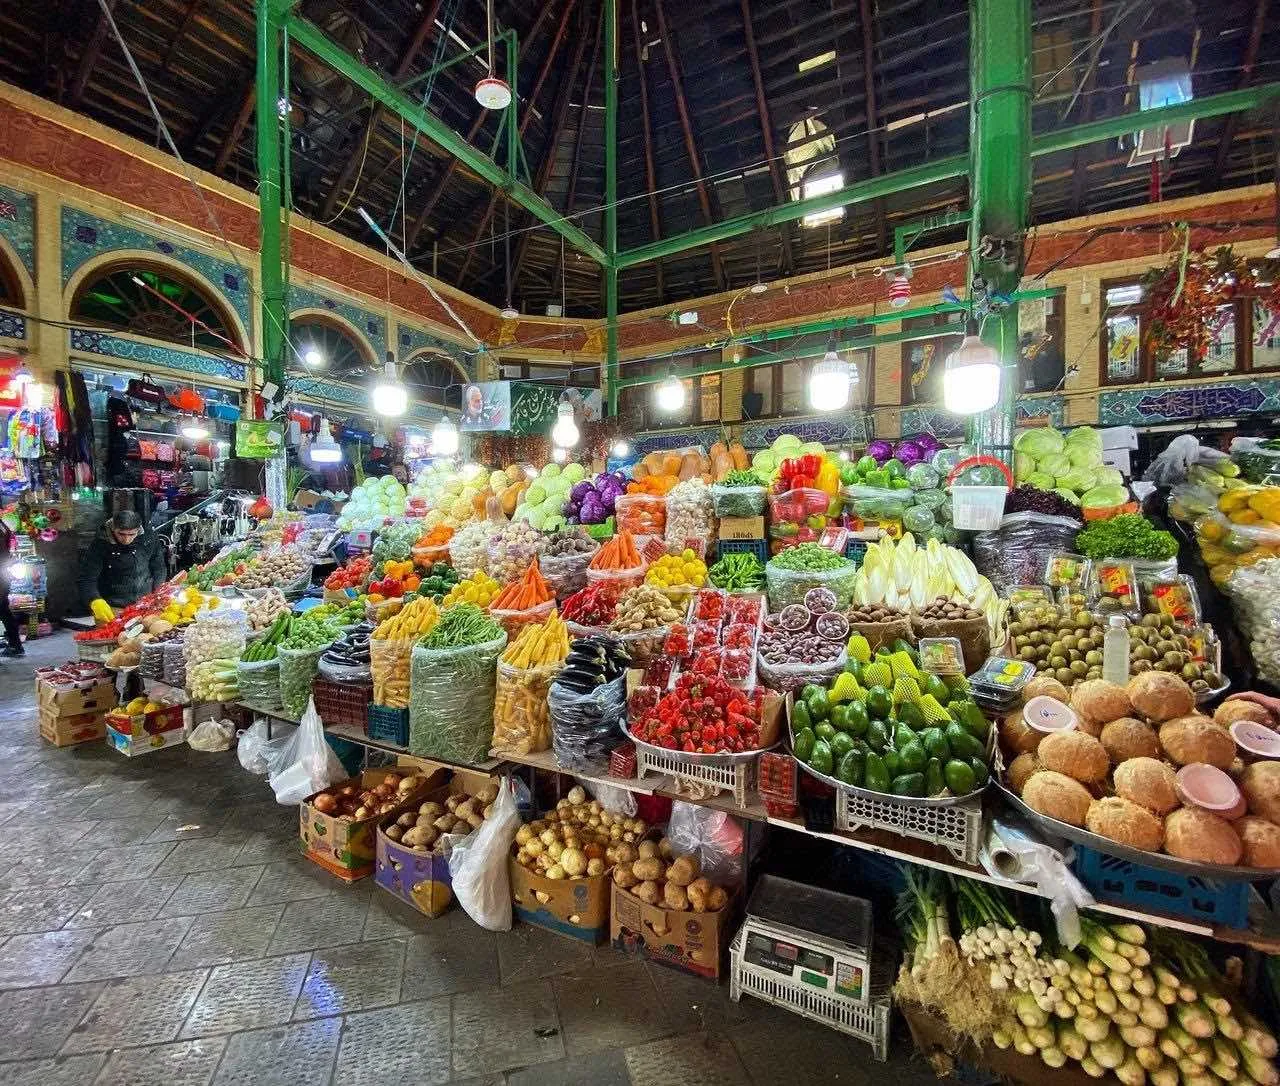 قدیمی ترین بازارهای تهران؛ بازار تجریش